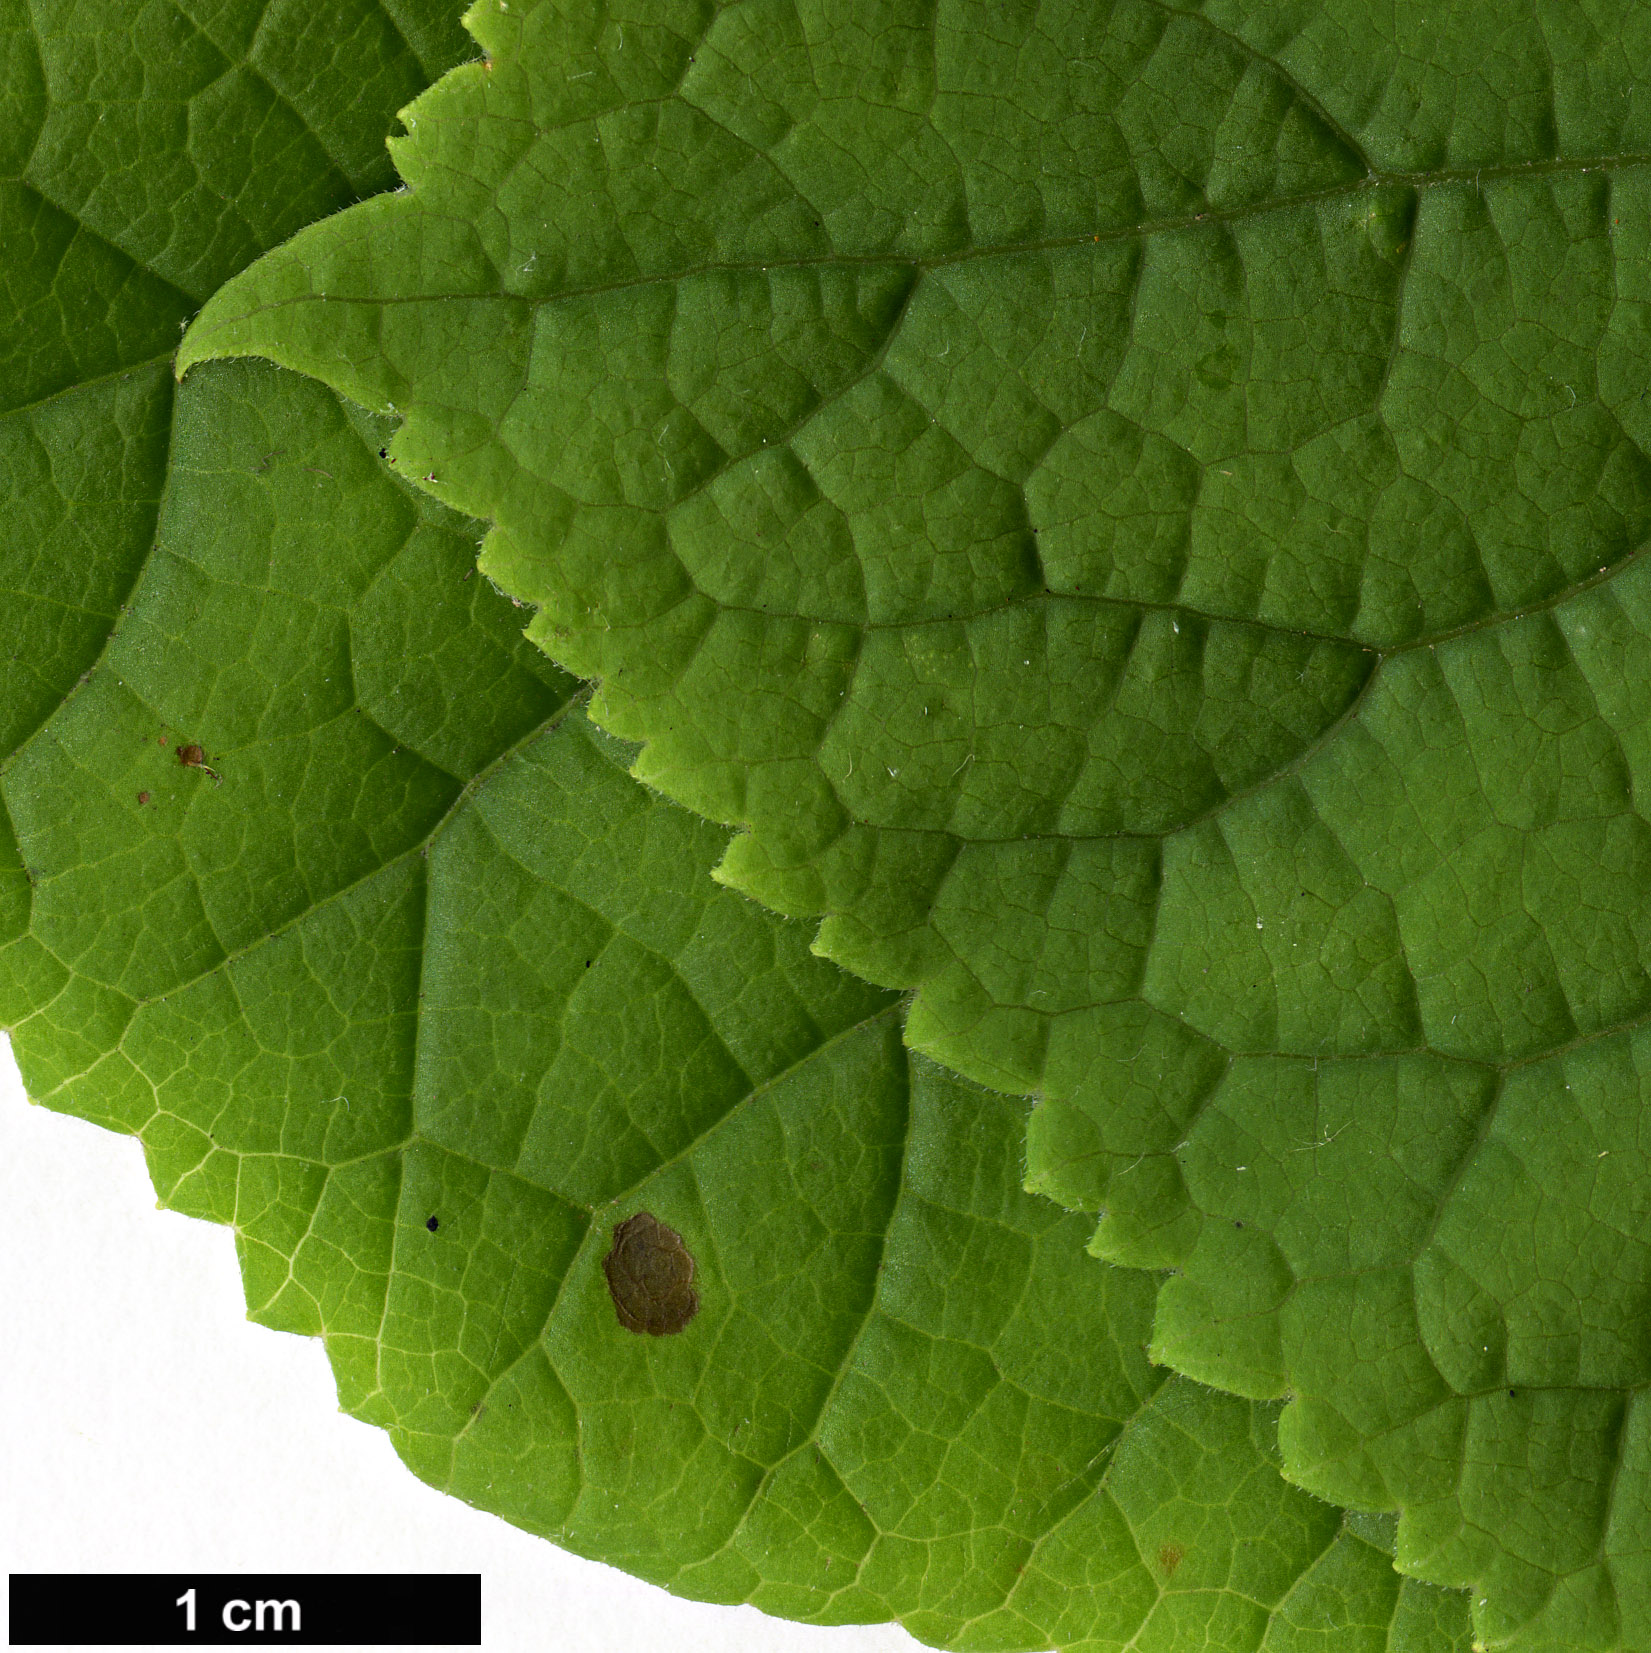 High resolution image: Family: Torricelliaceae - Genus: Torricellia - Taxon: tiliifolia